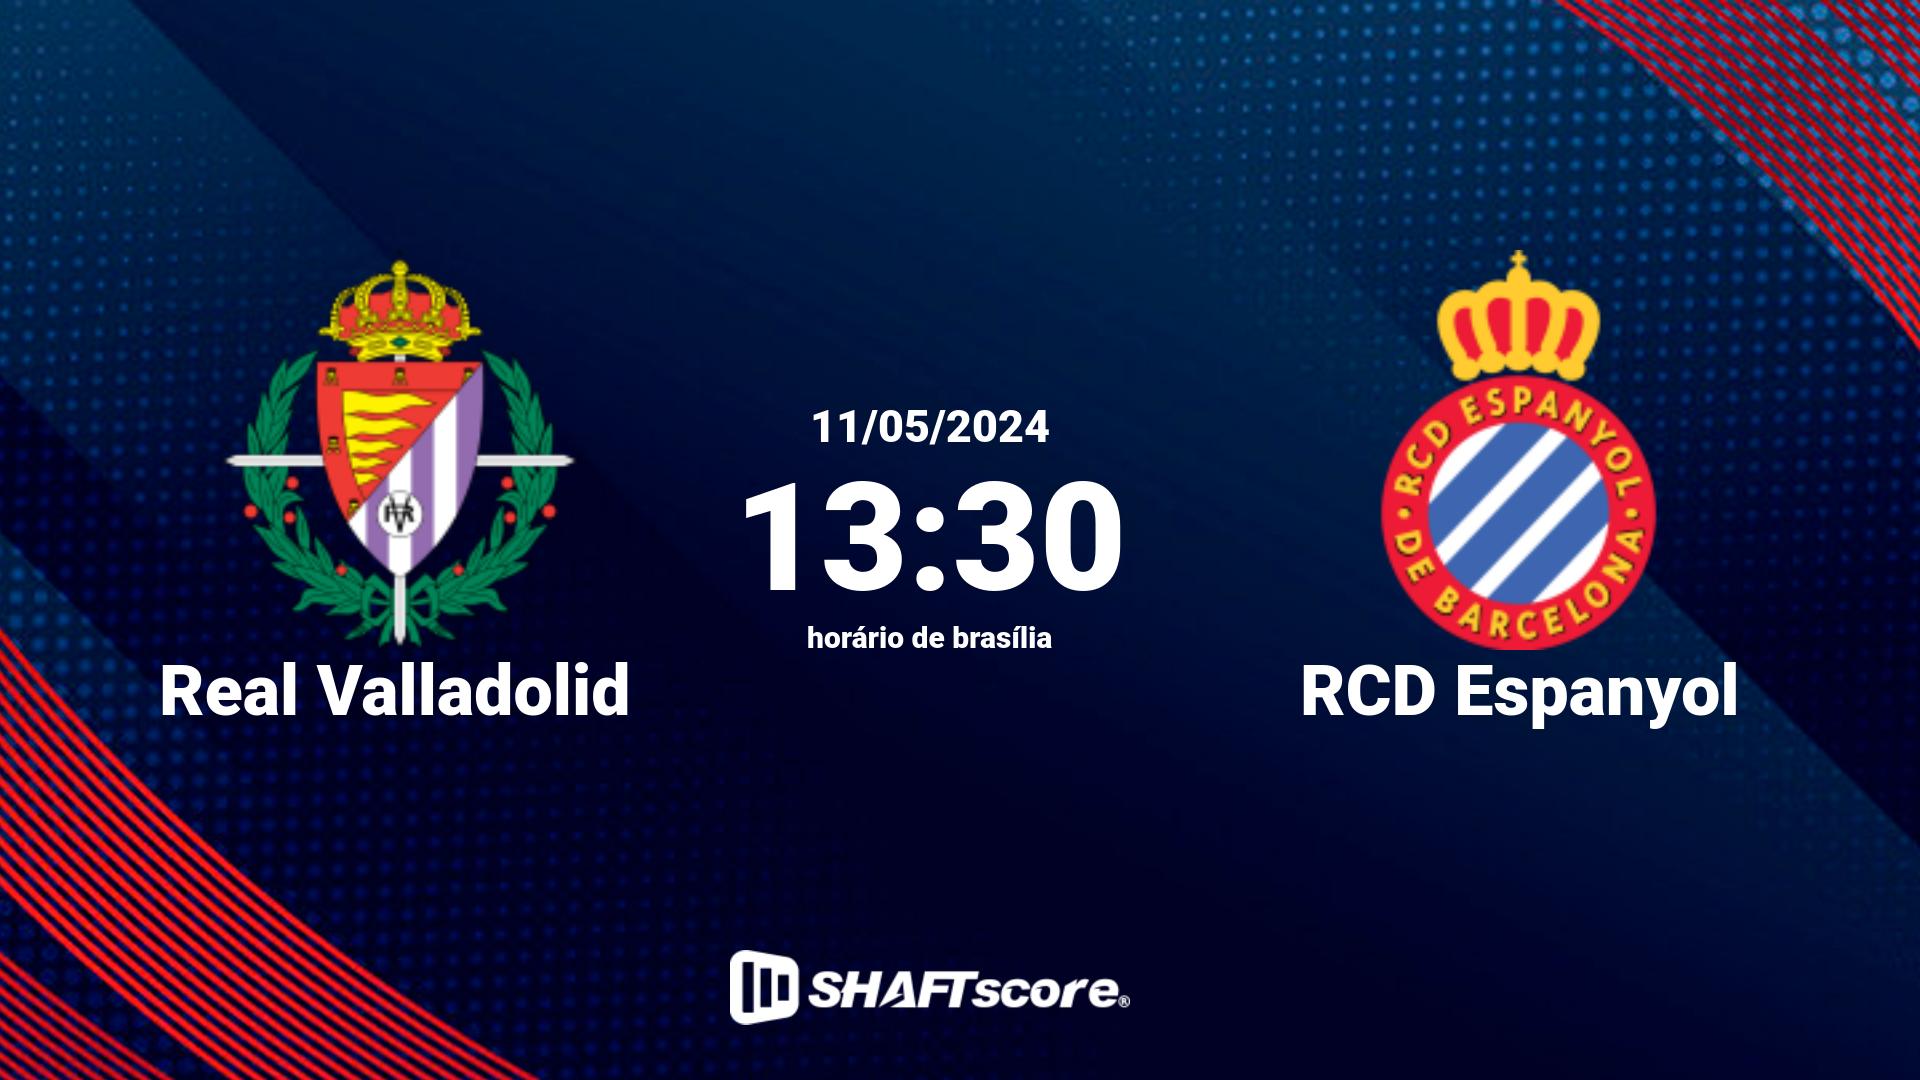 Estatísticas do jogo Real Valladolid vs RCD Espanyol 11.05 13:30